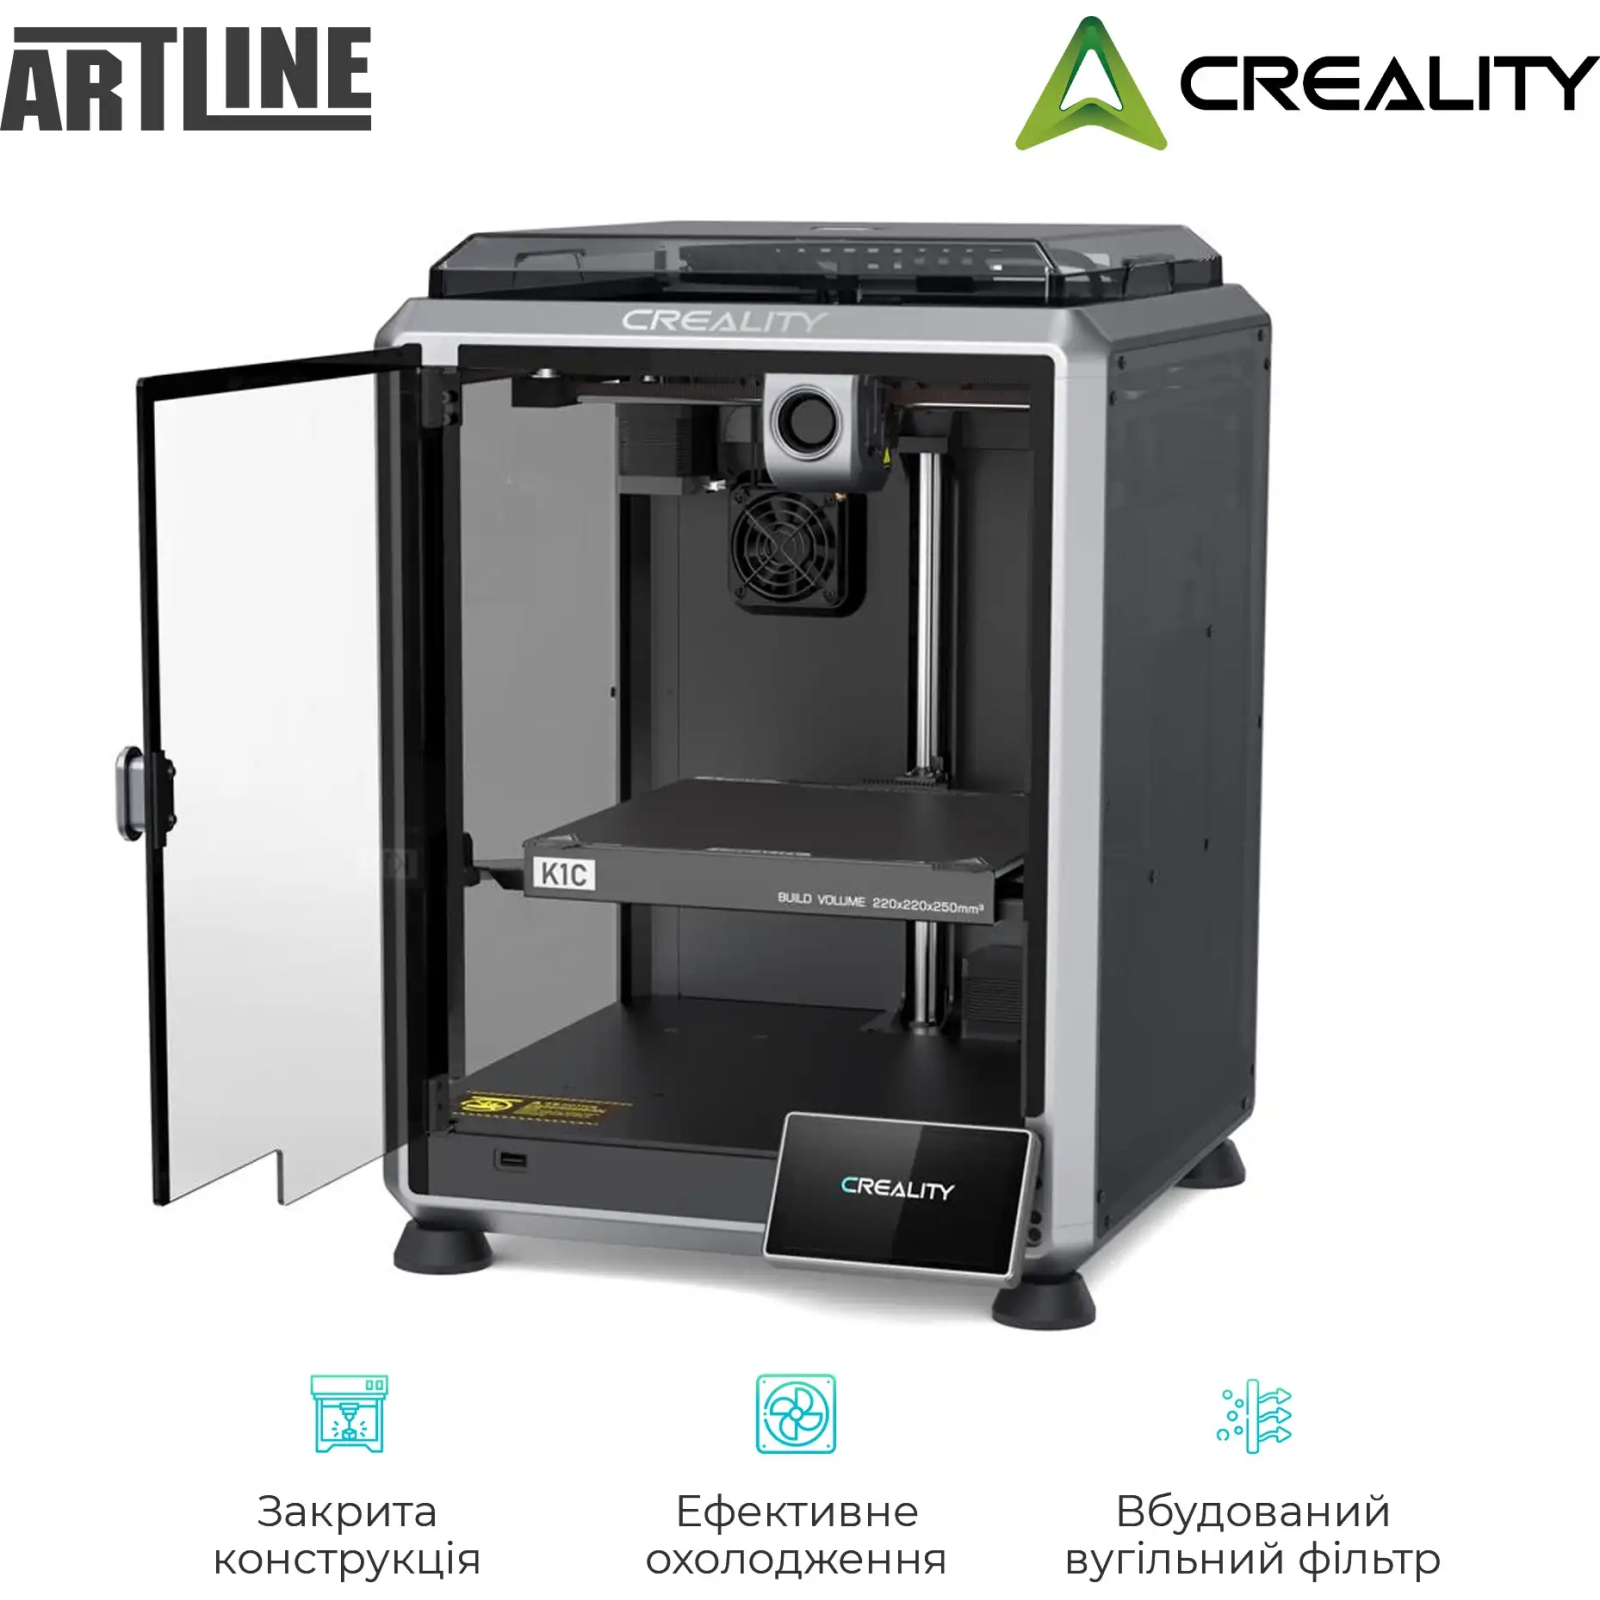 3D-принтер Creality CR-K1C изображение 4